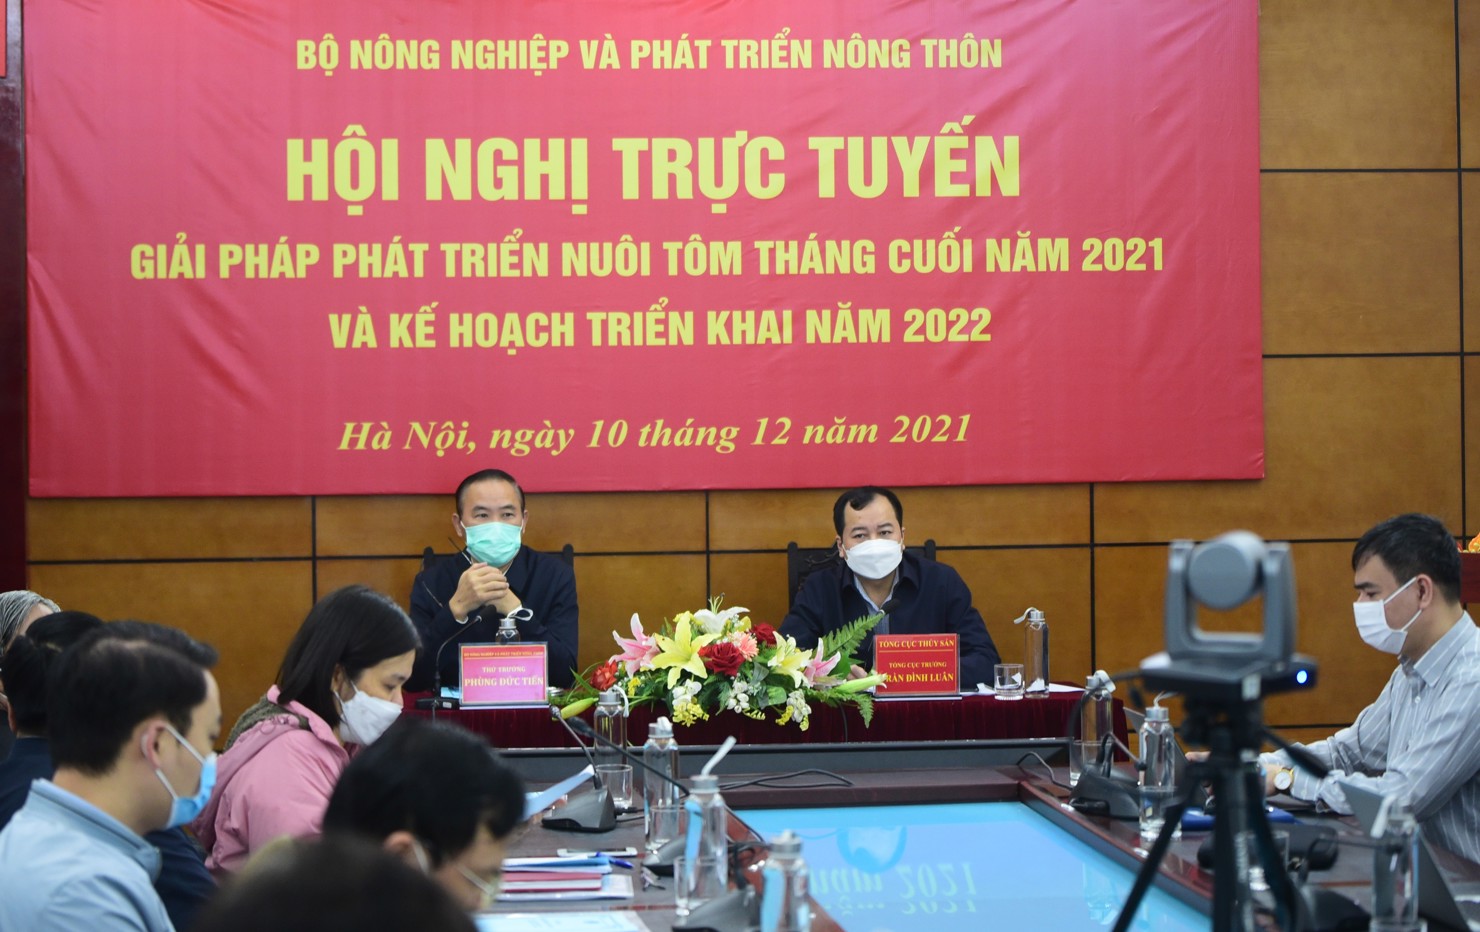 Hội nghị trực tuyến “Giải pháp phát triển nuôi tôm tháng cuối năm 2021 và kế hoạch triển khai năm 2022”. Ảnh: VGP/Đỗ Hương